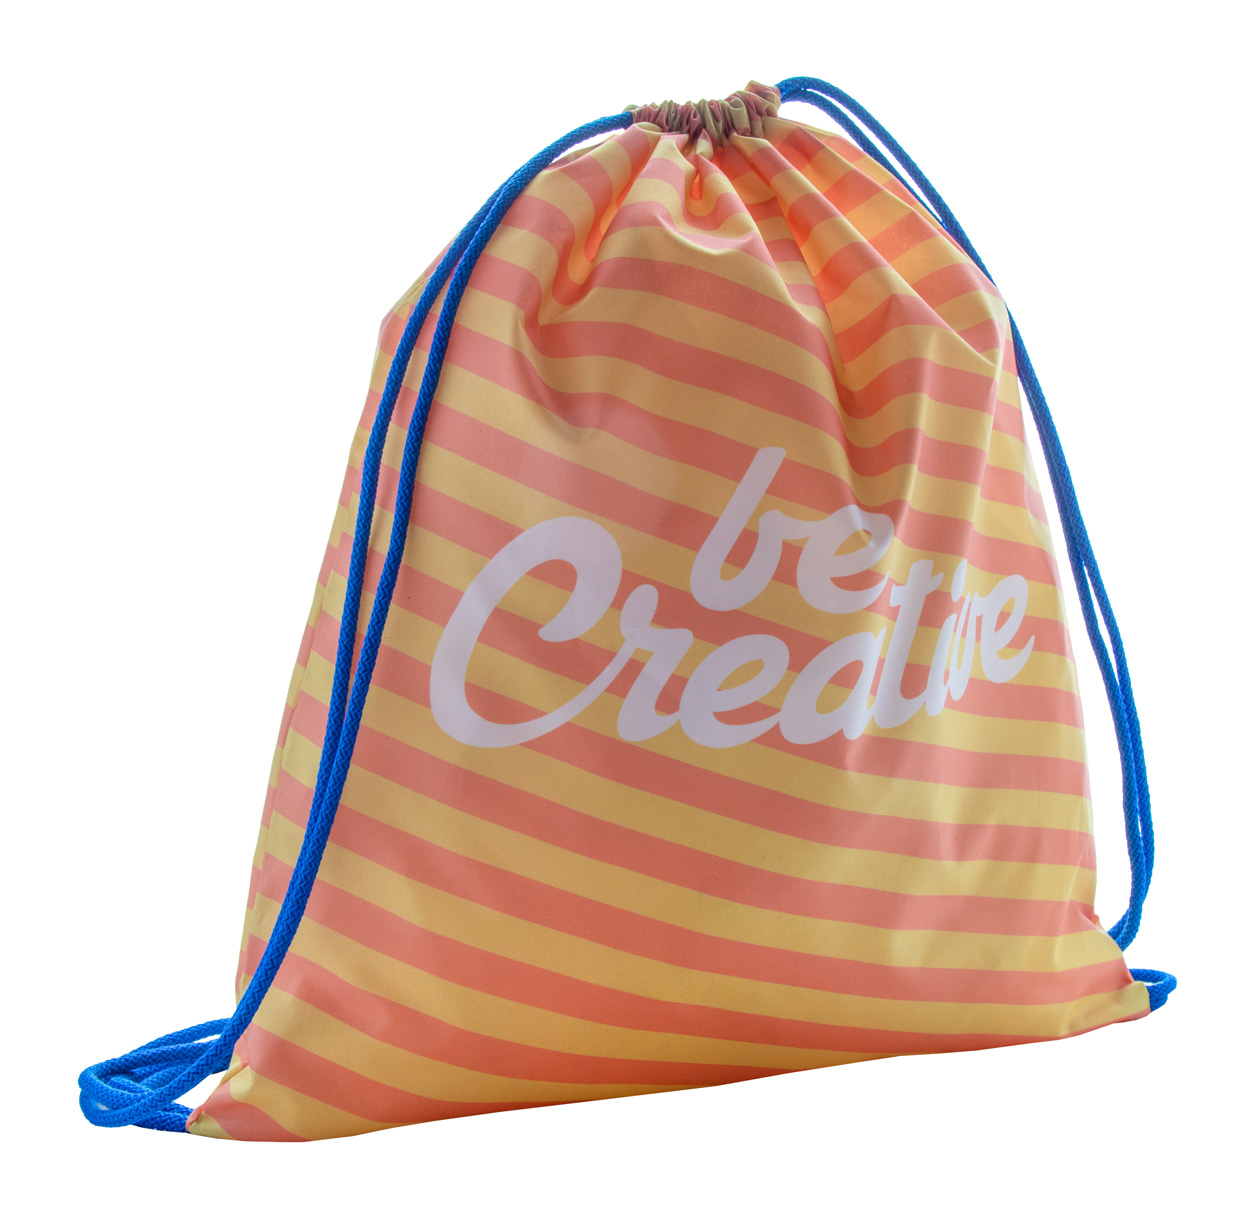 Promo  CreaDraw custom drawstring bag